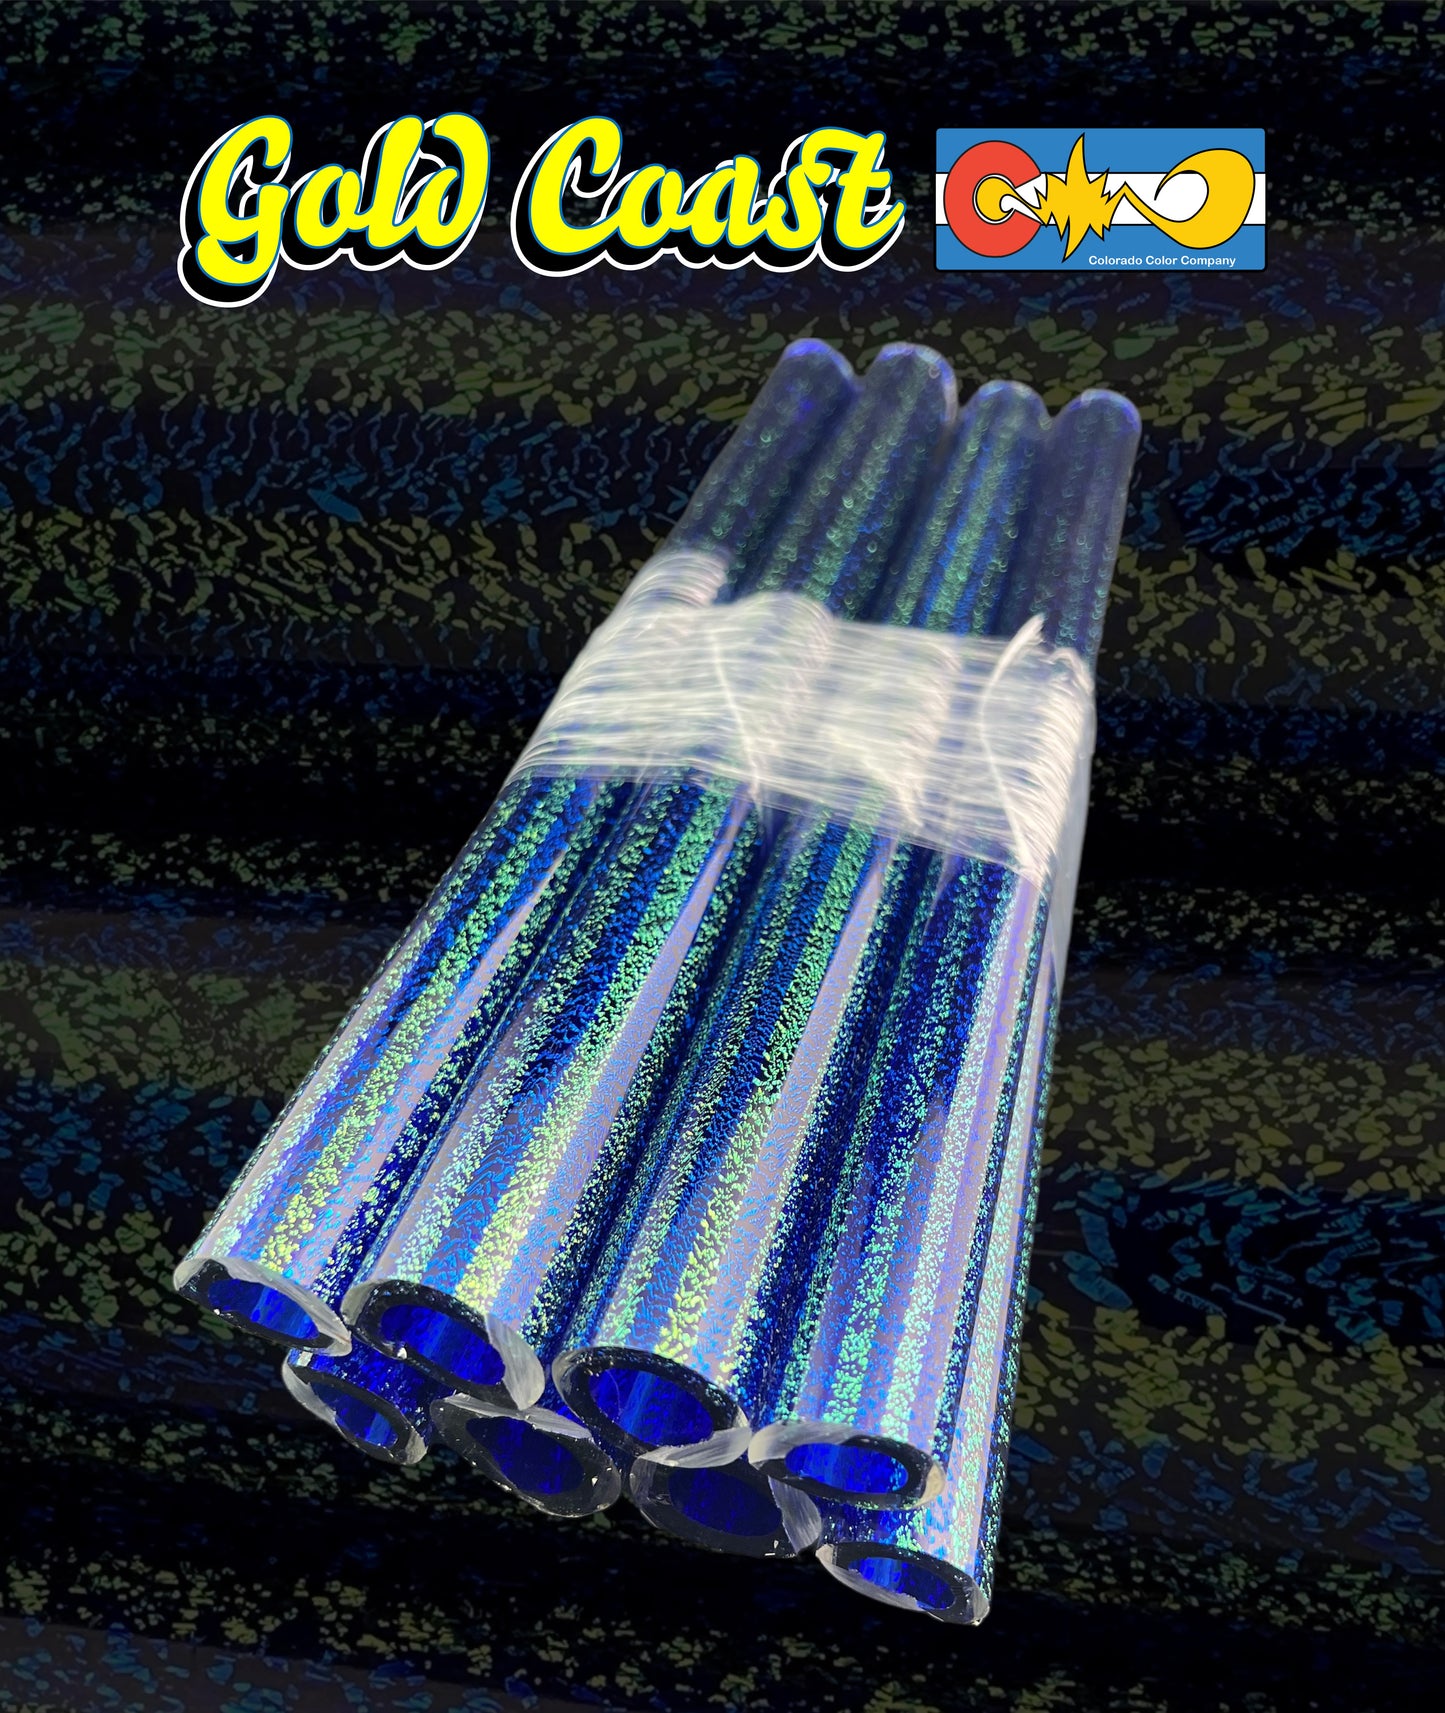 Gold Coast - Capa central de cobalto - Vidrio de borosilicato